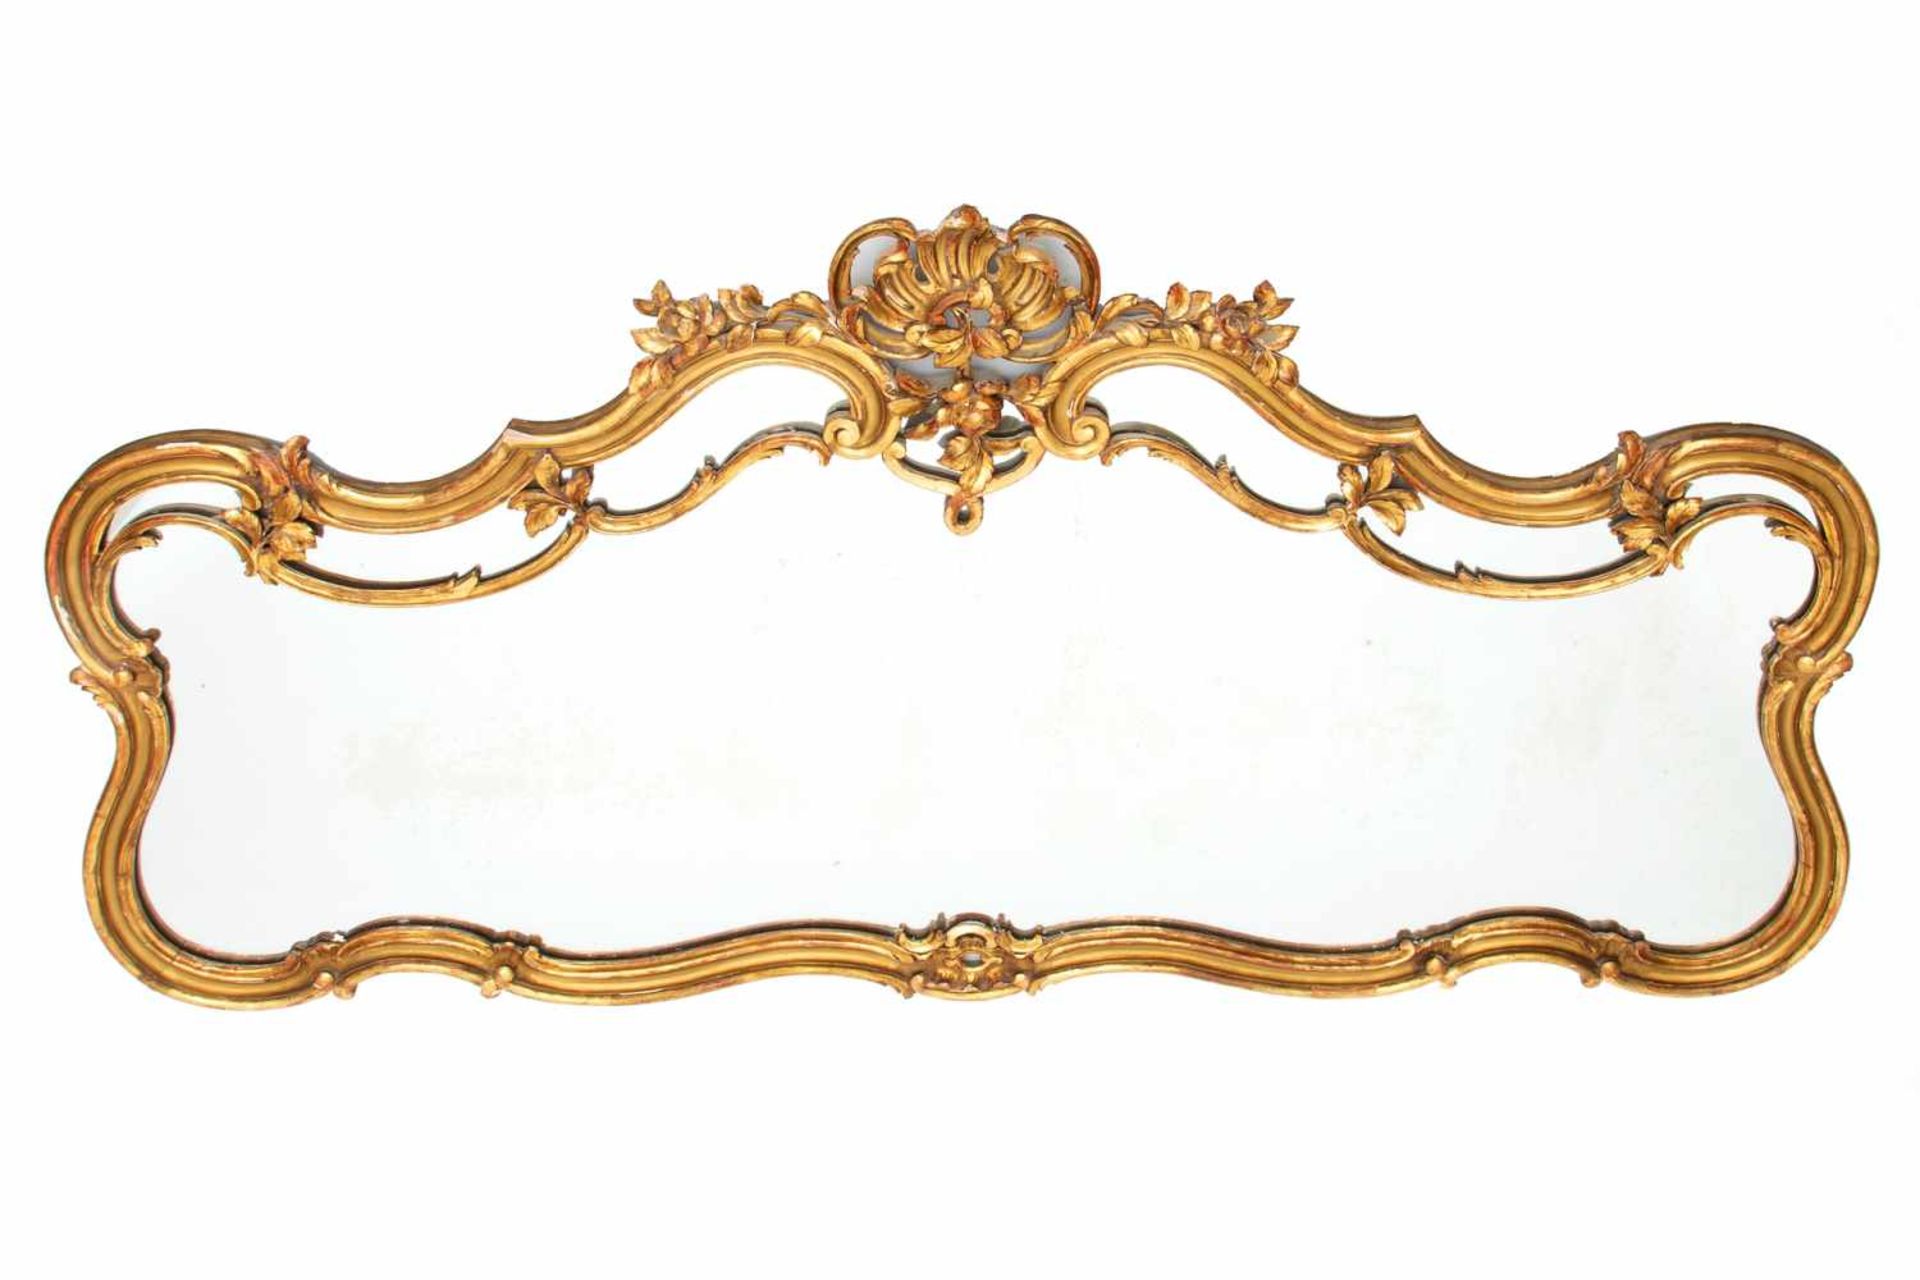 Spiegel in verguld en gebronst gecontourneerd houten lijst in Rococo-stijl, 19e eeuw,met